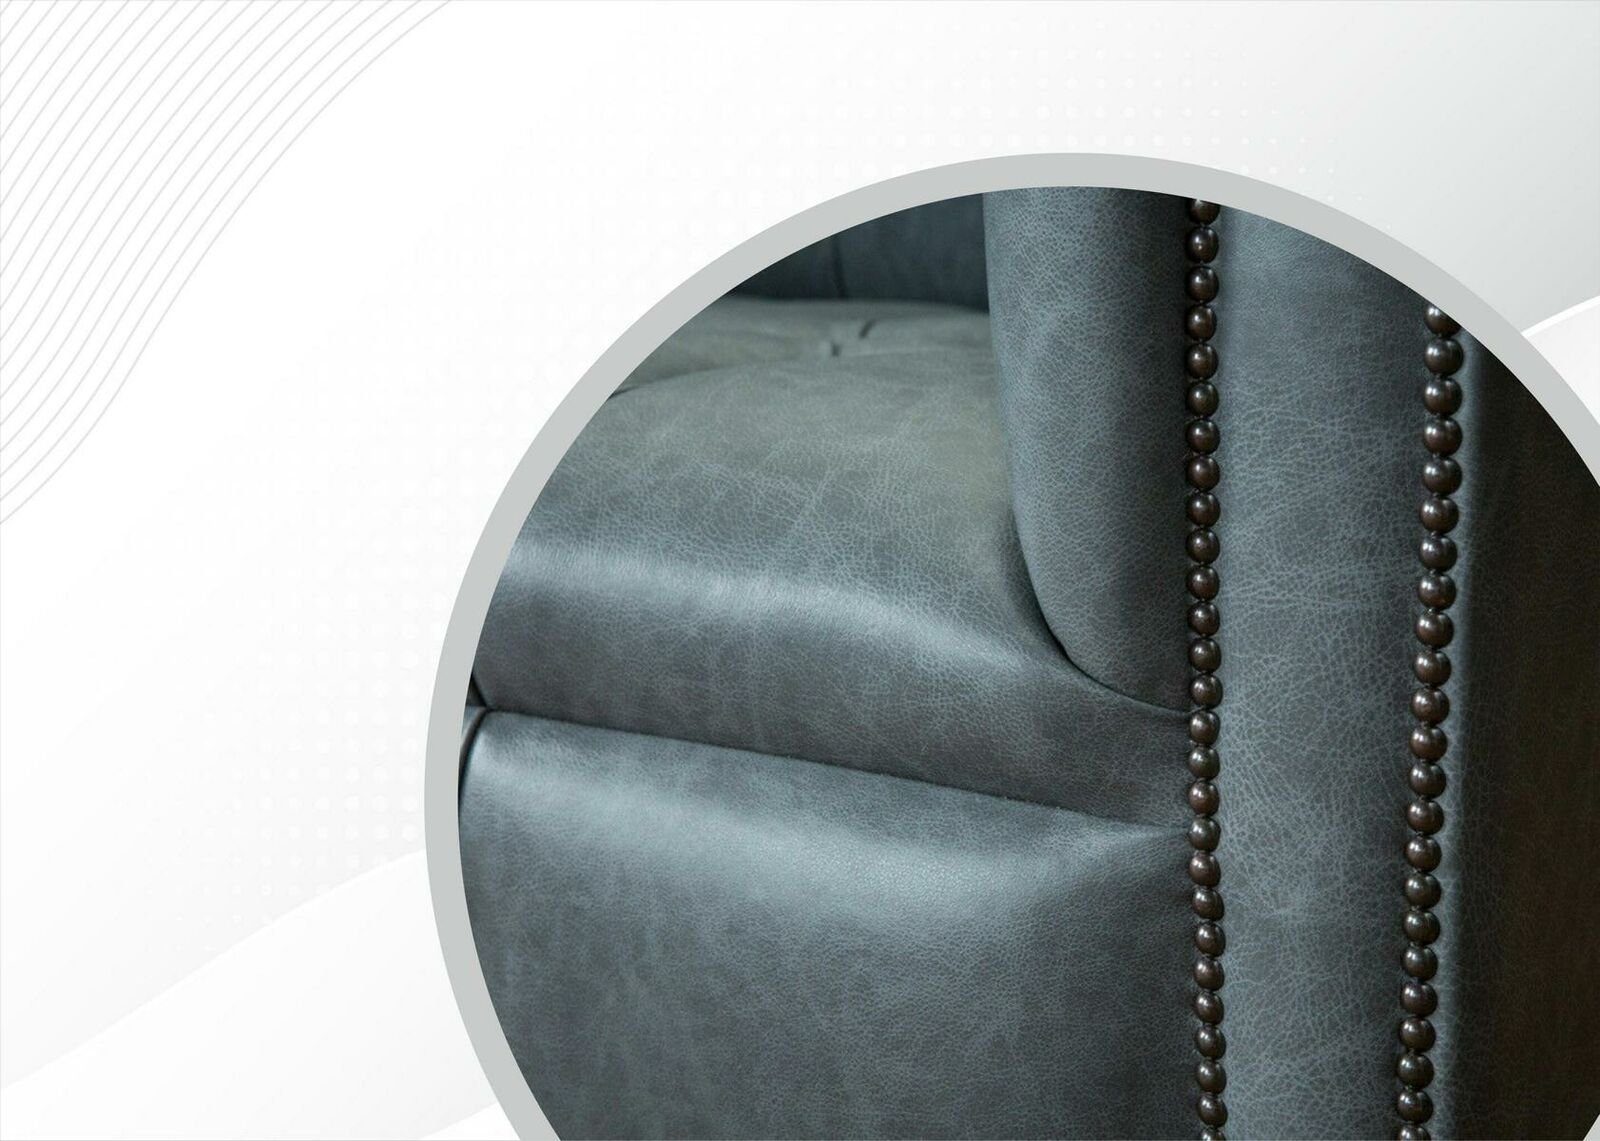 Chesterfield Wohnzimmermöbel Europe Luxus Neu, Design JVmoebel Chesterfield-Sofa Zweisitzer in Made